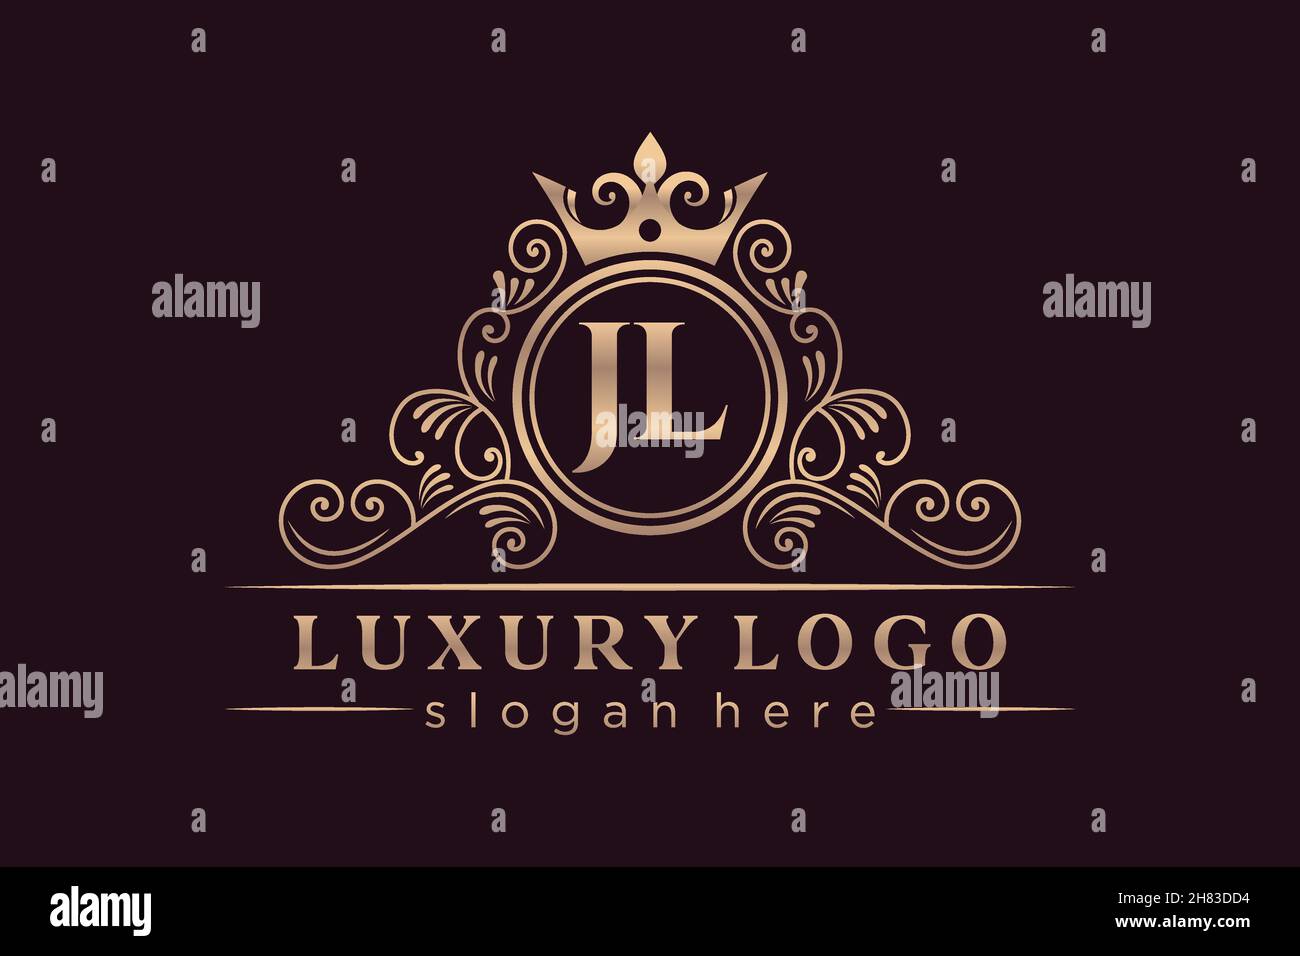 JL Initial Letter Gold calligraphic feminine floral hand drawn heraldic monogram antique vintage style luxury logo design Premium Stock Vector